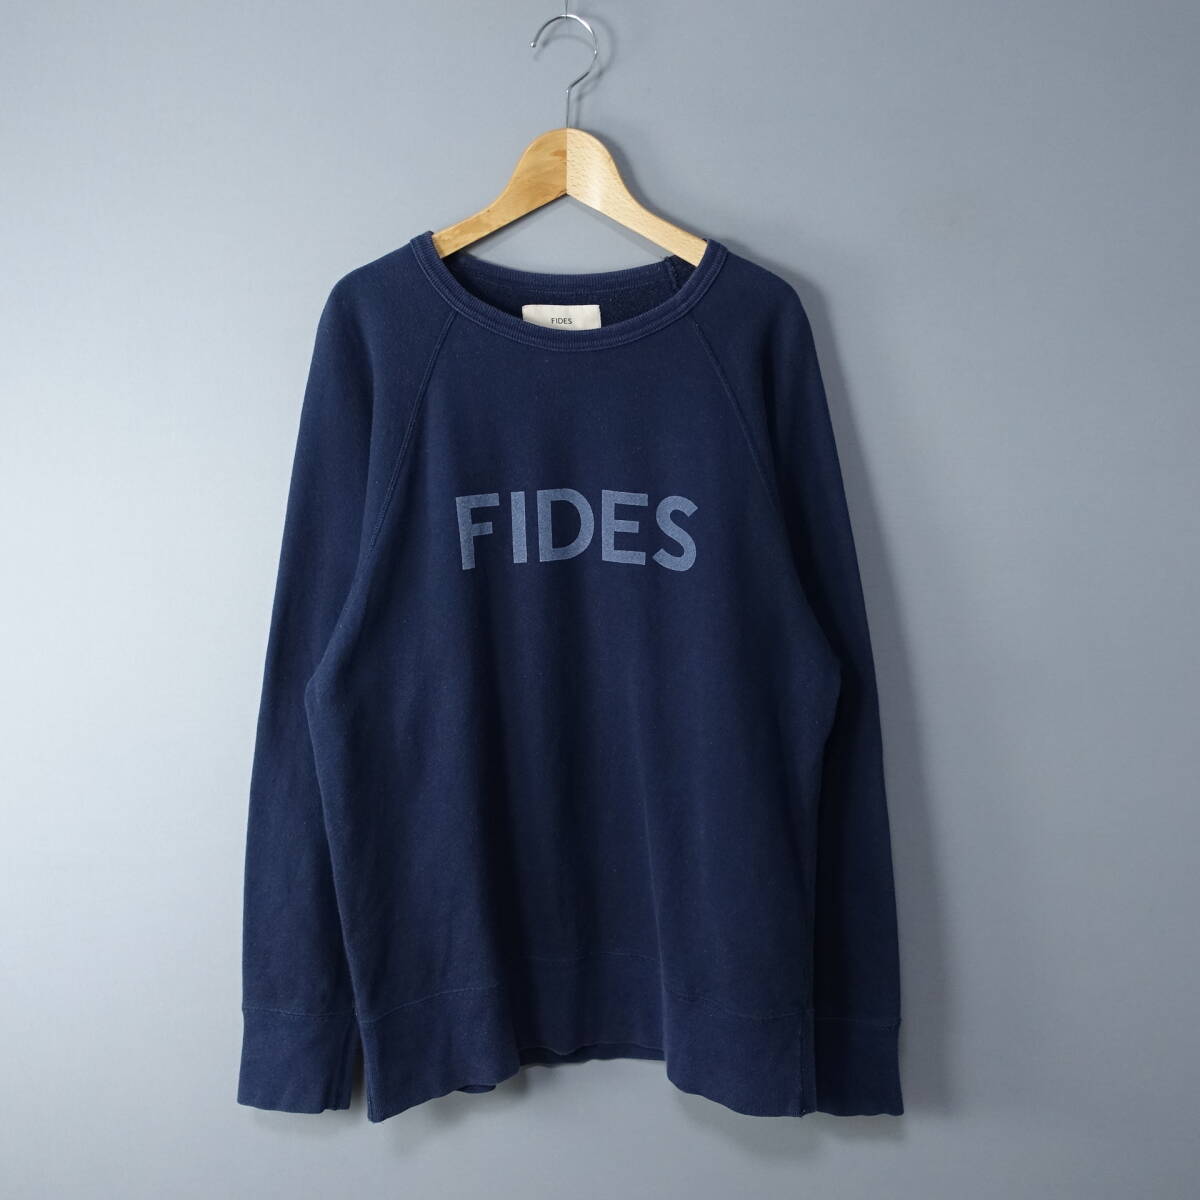 FIDES/fites/S/ сделано в Японии / тренировочный / tray na/ cut and sewn / темно-синий / мужской / длинный рукав 